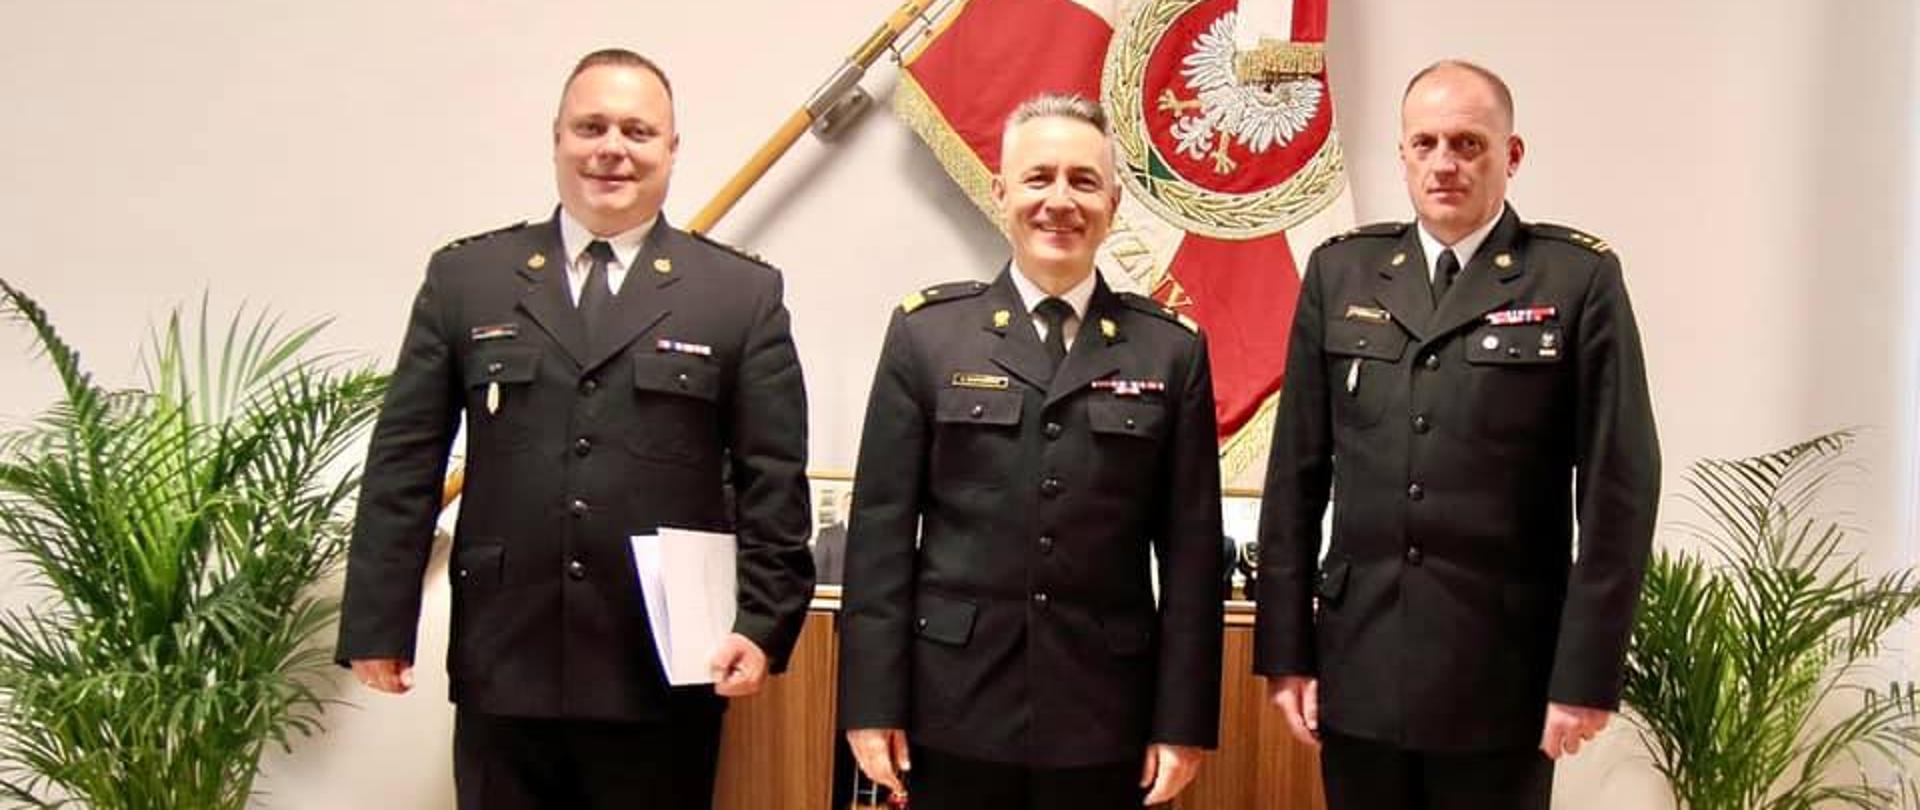 Powierzenie pełnienia obowiązków na stanowisku Zastępcy Komendanta Wojewódzkiego Państwowej Straży Pożarnej w Szczecinie